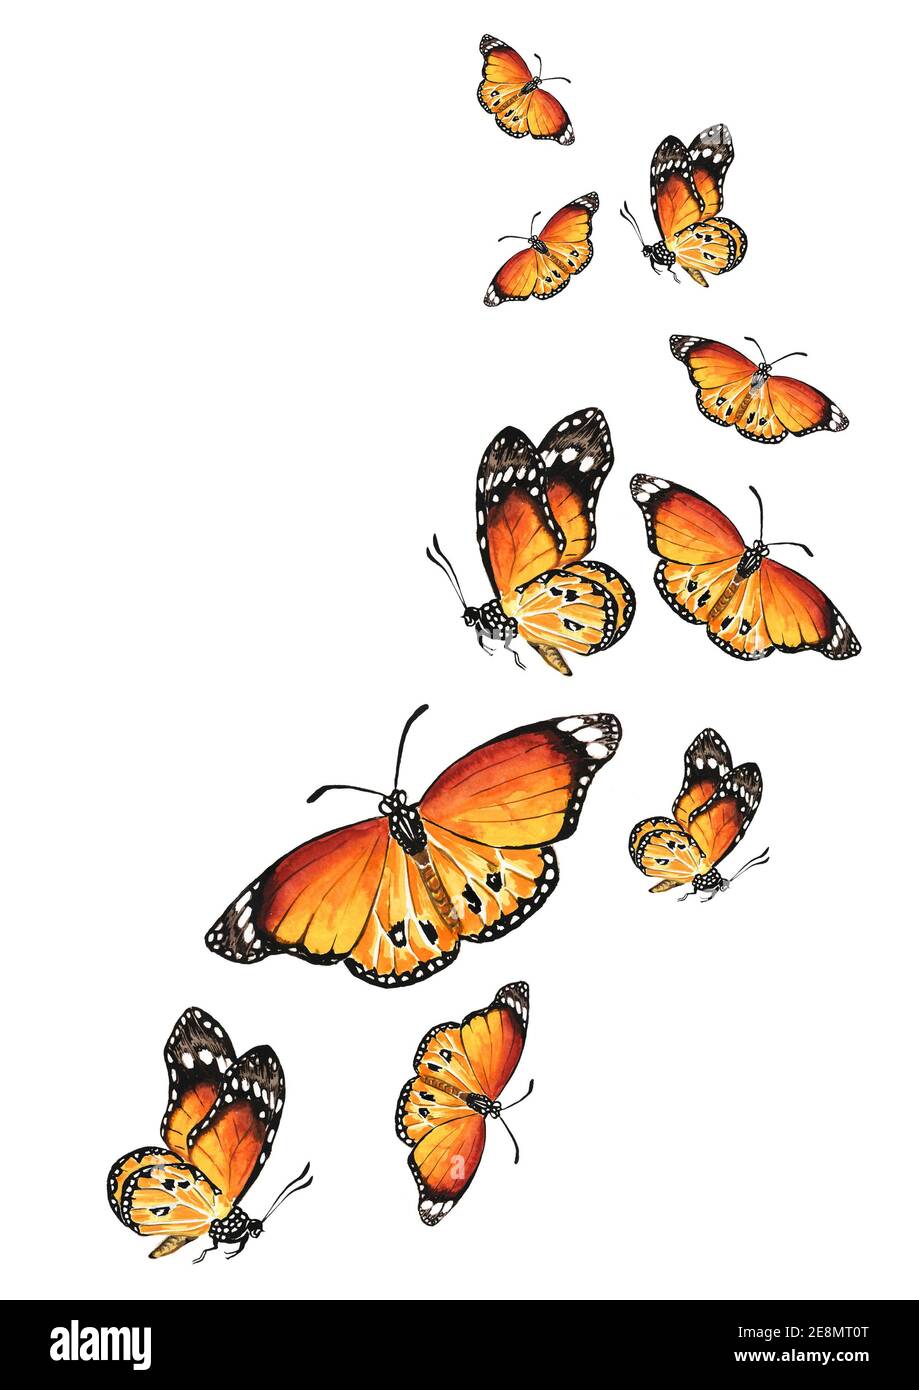 Mariposas voladoras. El concepto de liberación, libertad, avance, cambio.  Ilustración de acuarela dibujada a mano aislada sobre fondo blanco  Fotografía de stock - Alamy